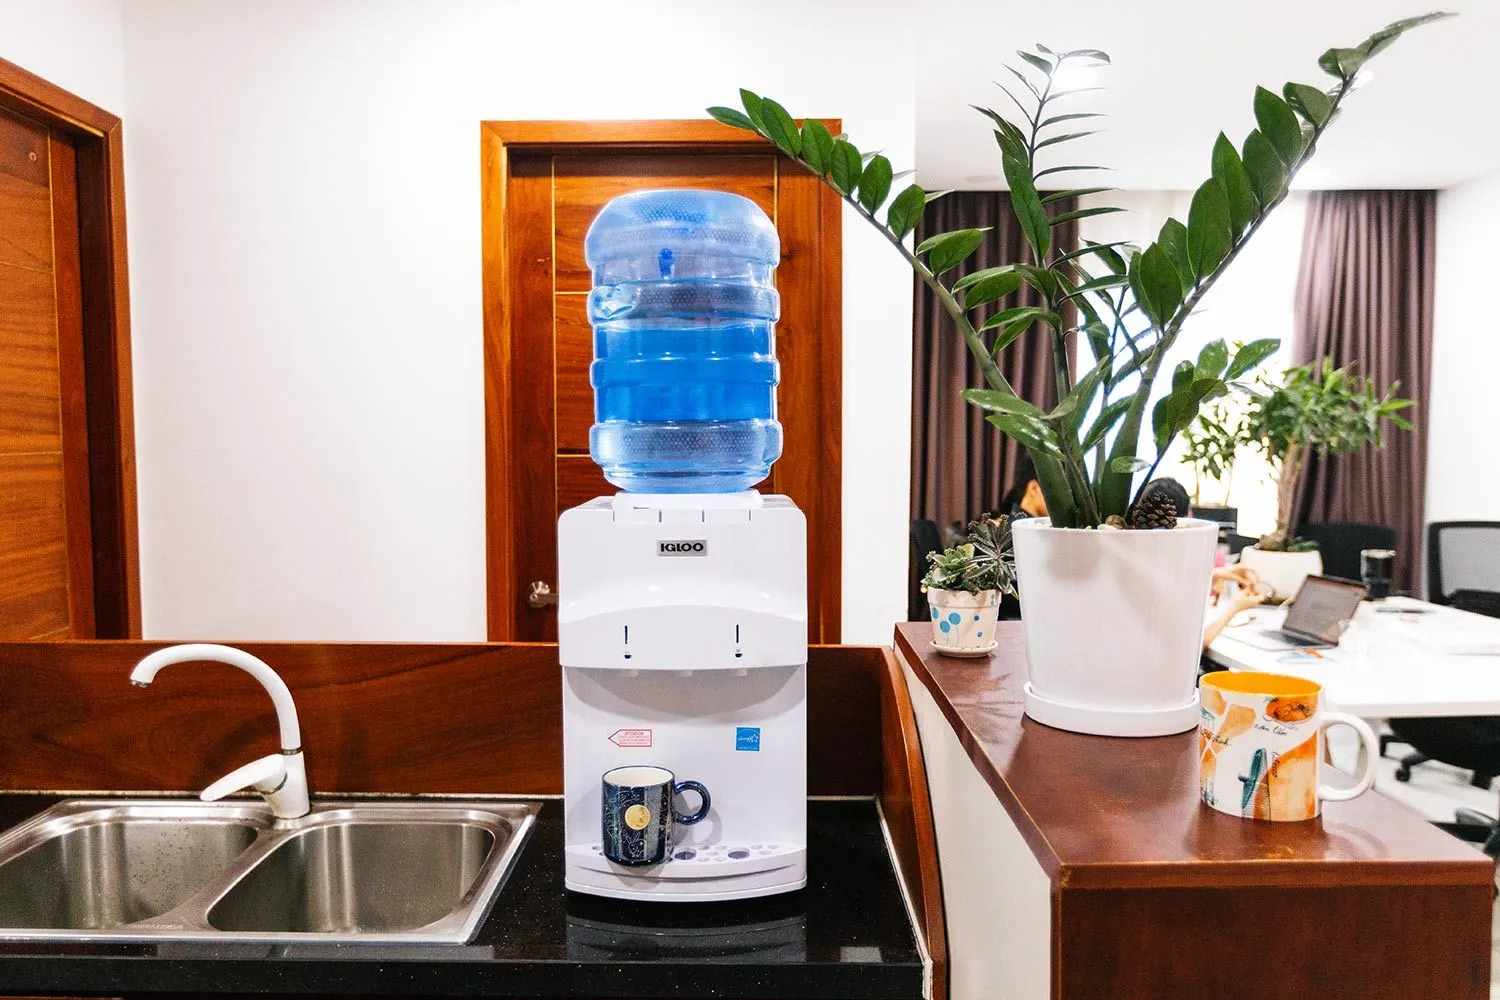 https://cdn.healthykitchen101.com/reviews/images/water-cooler-dispensers/igloo-bottled-water-cooler-dispenser-clf6lz40s0001kh882q1d75h4.jpg